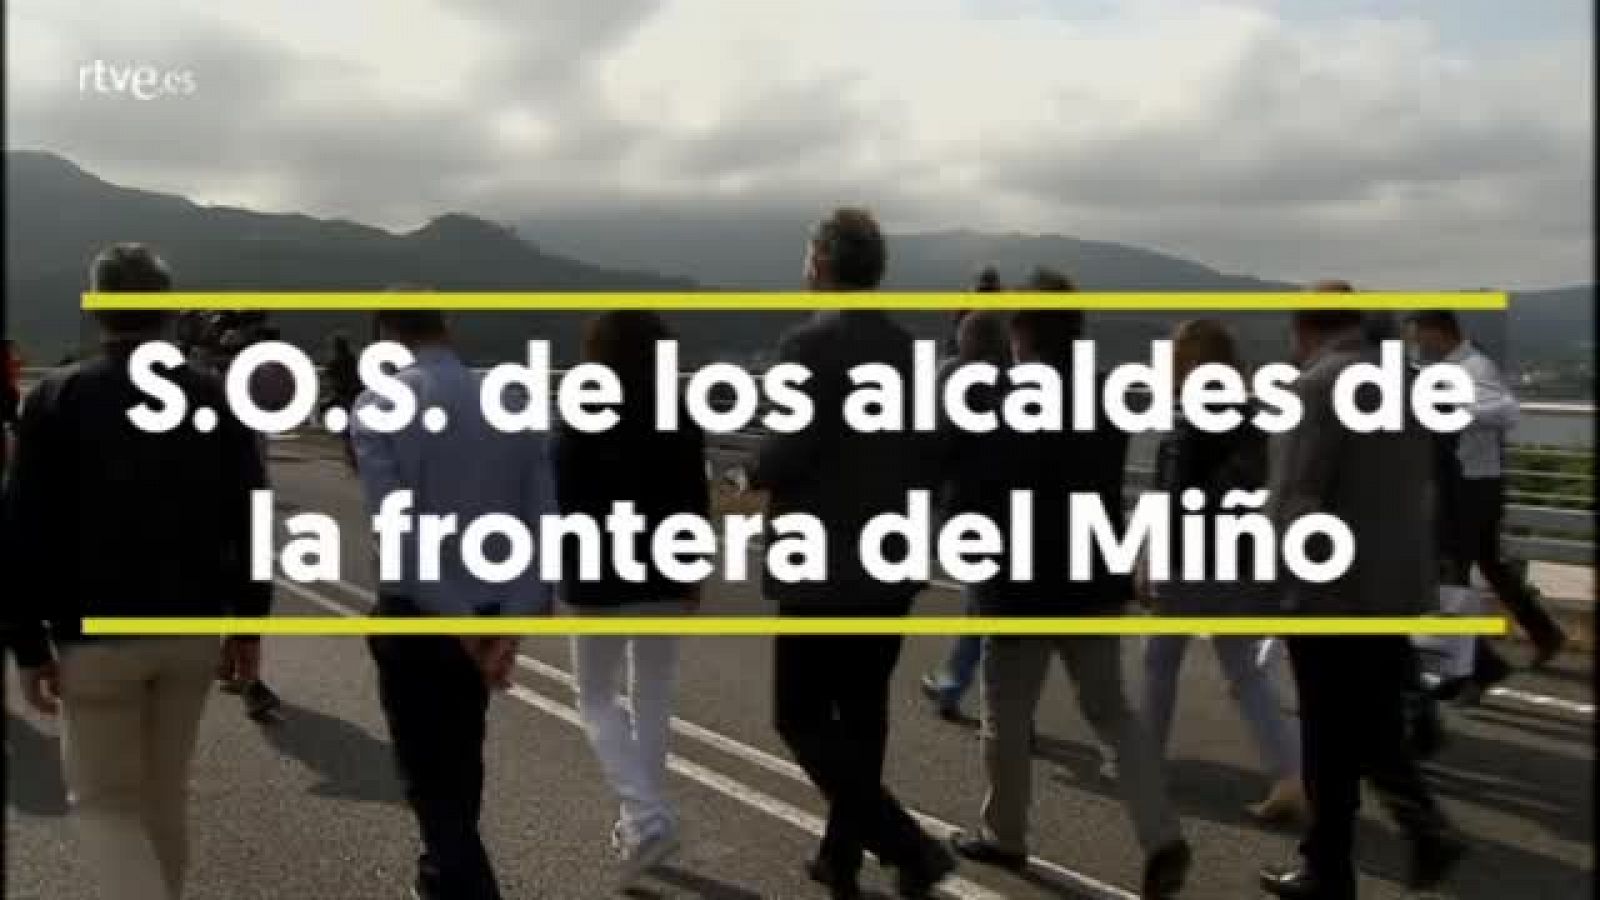 Los alcaldes de la frontera del río Miño piden la apertura de más puentes - RTVE.es